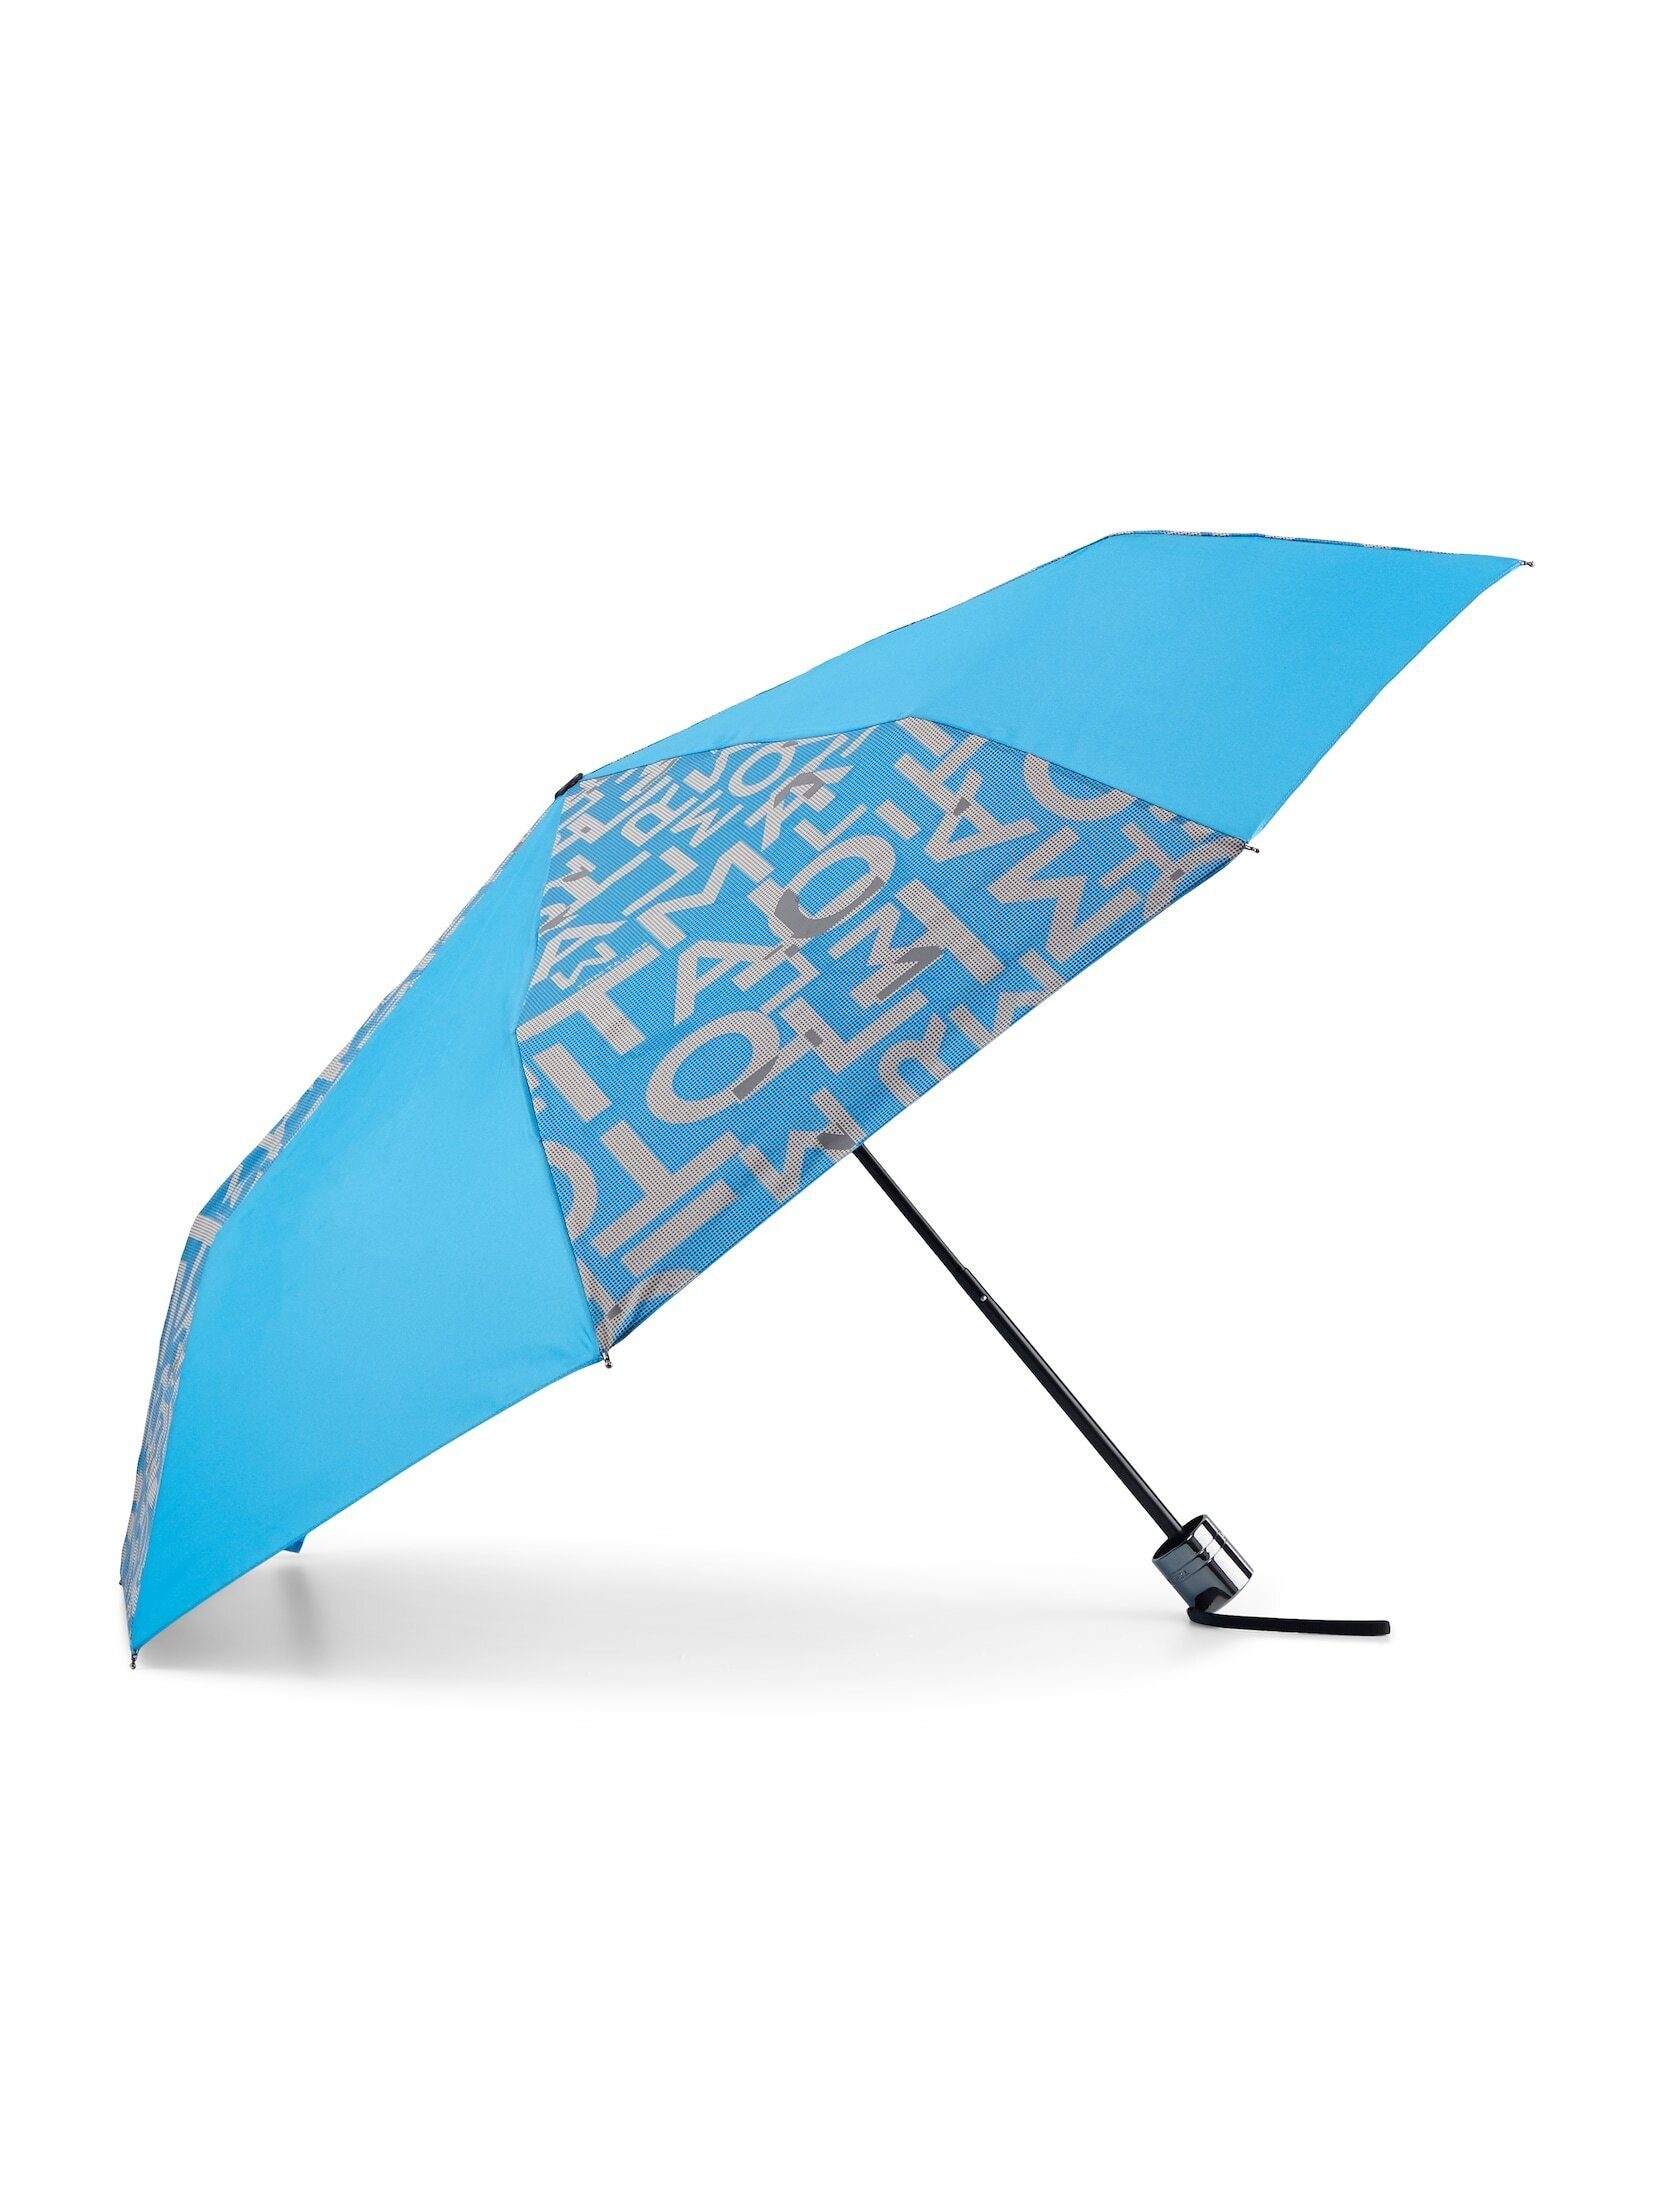 TOM TAILOR Taschenregenschirm Basic Regenschirm mit Textprint mediterranian blue 1